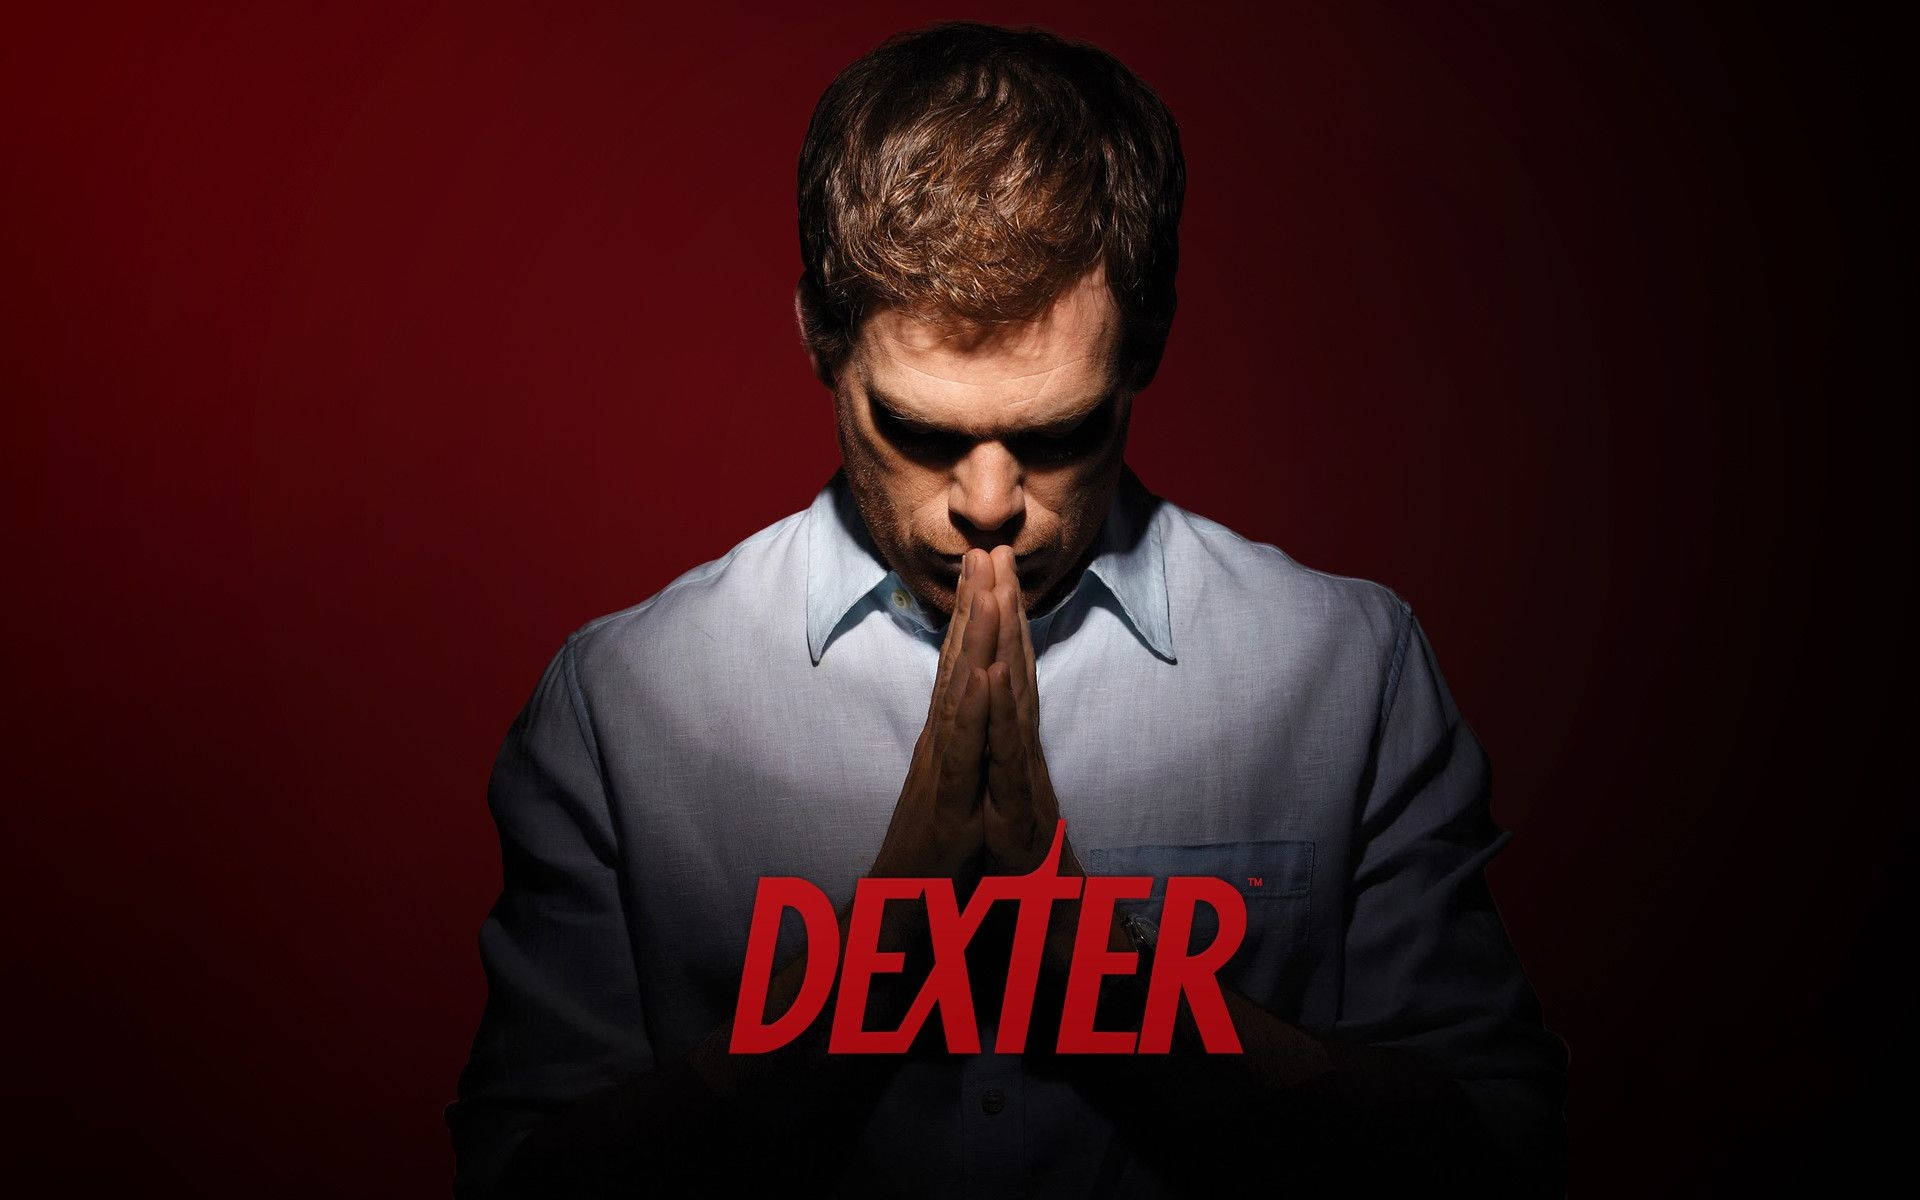 Michael C. Hall as Dexter Wallpaper